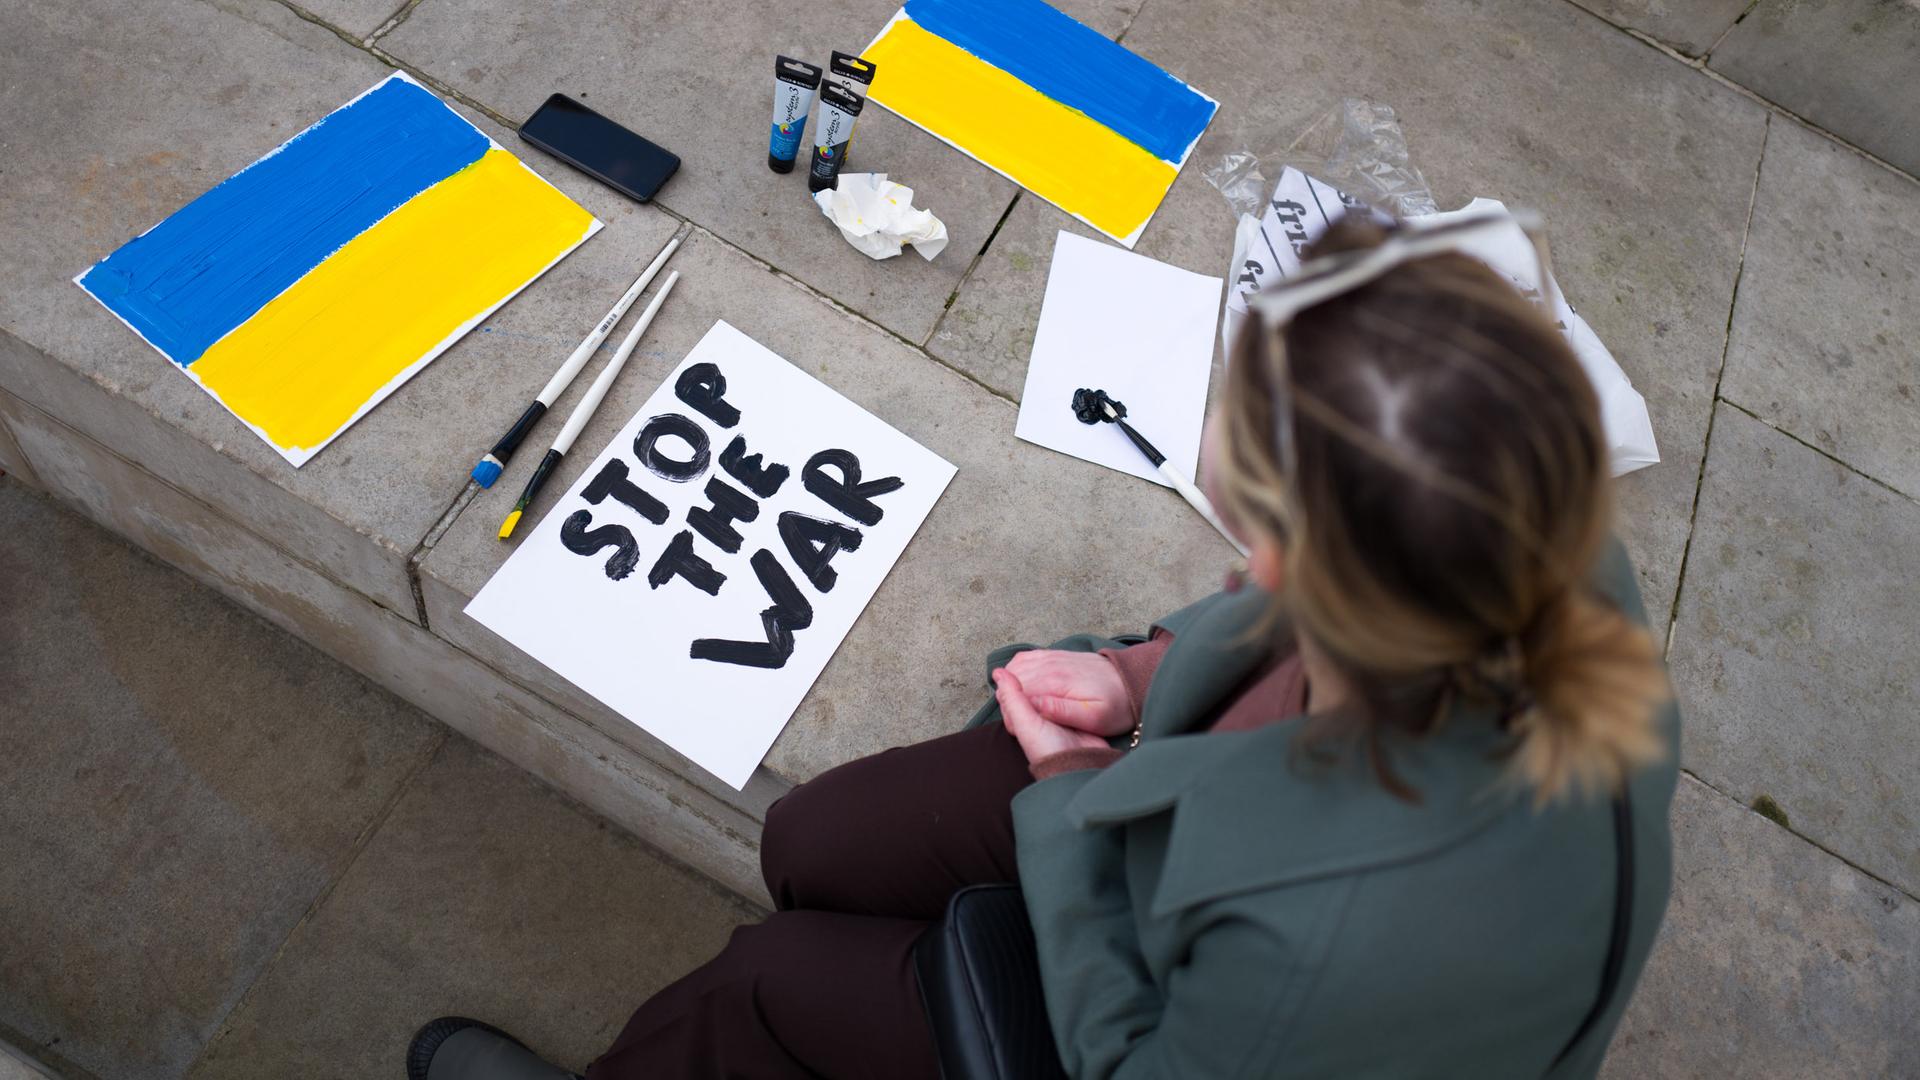 Eine Frau fertigt ein Plakat an mit den Farben der ukrainischen Nationaflagge und den Worten "Stop the war".